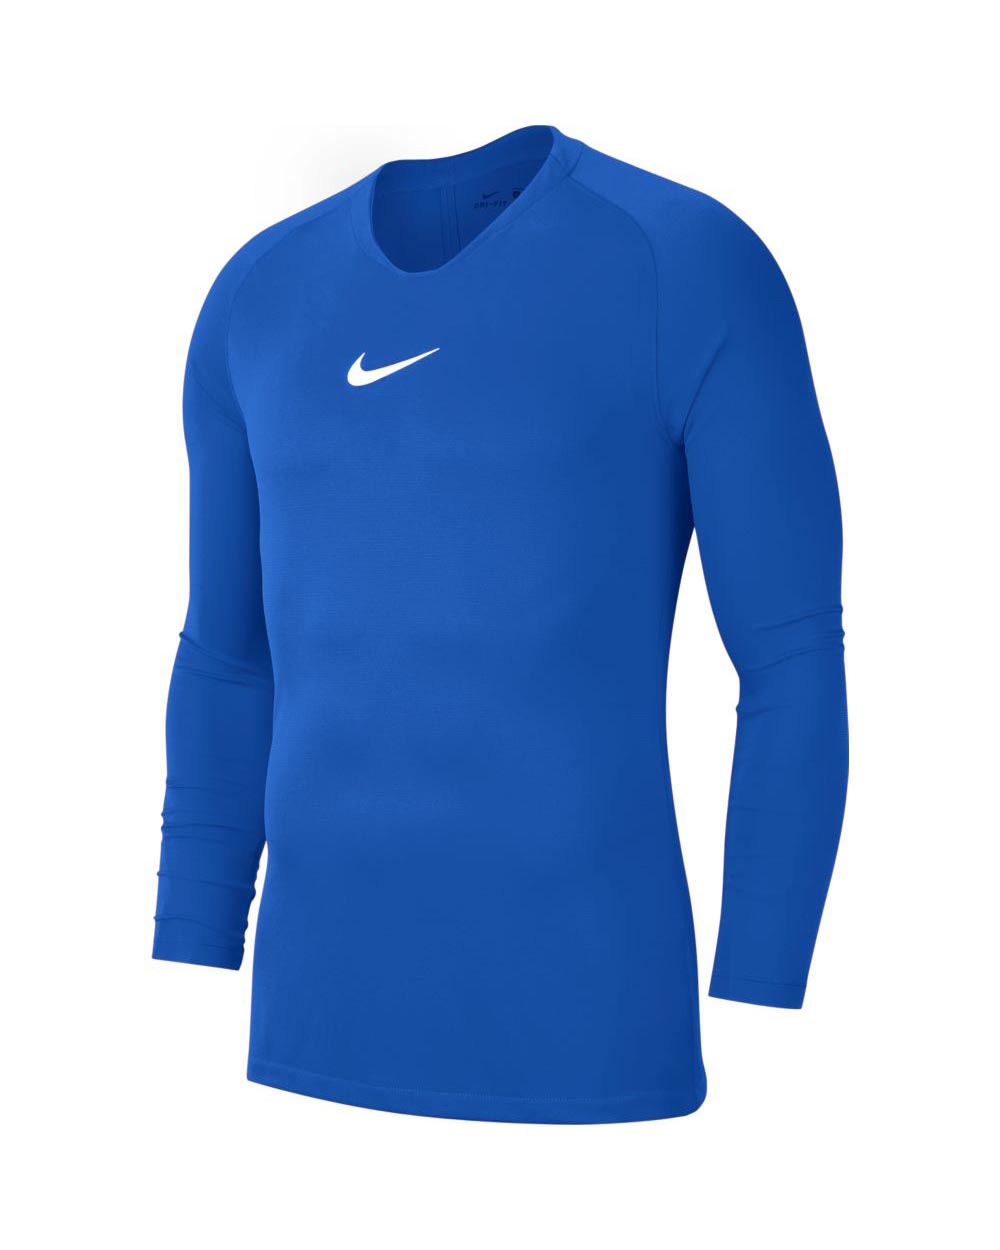 Sous maillot Nike Park manches longues pour Homme - AV2609-463 - Bleu Royal